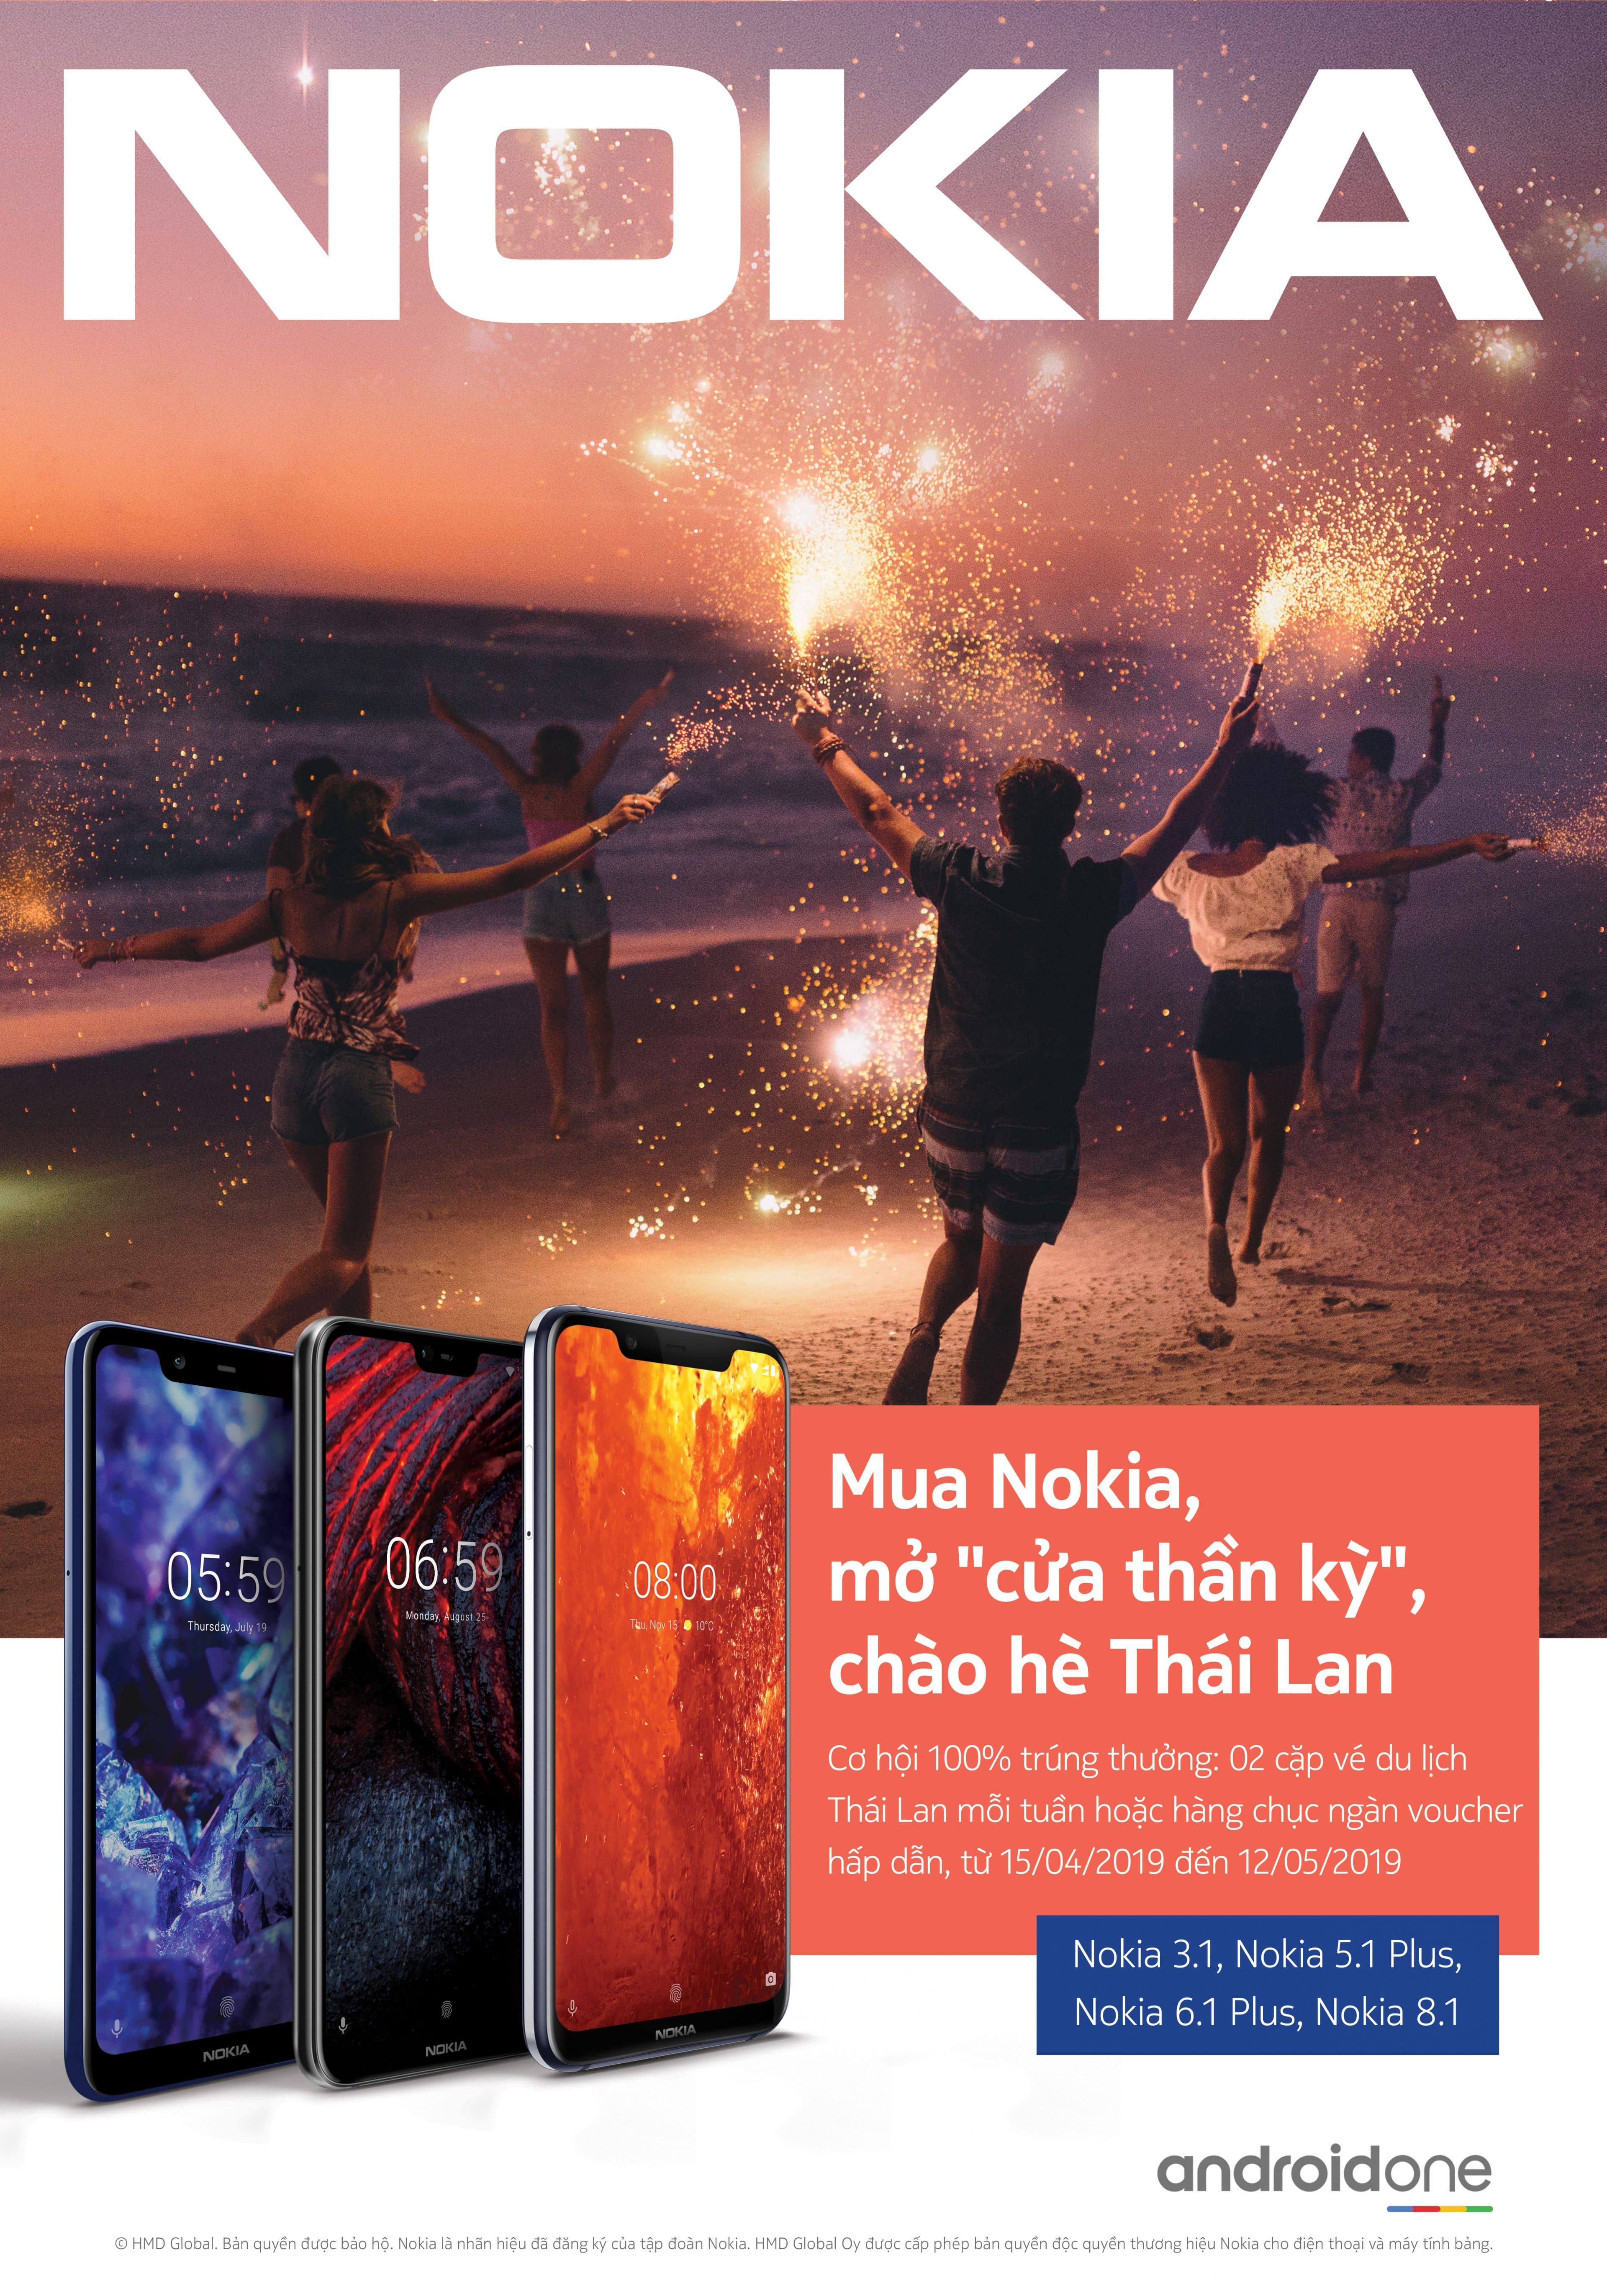 Nokia khởi động mùa hè bằng chương trình khuyến mãi “Mở cửa thần kỳ, chào hè Thái Lan”